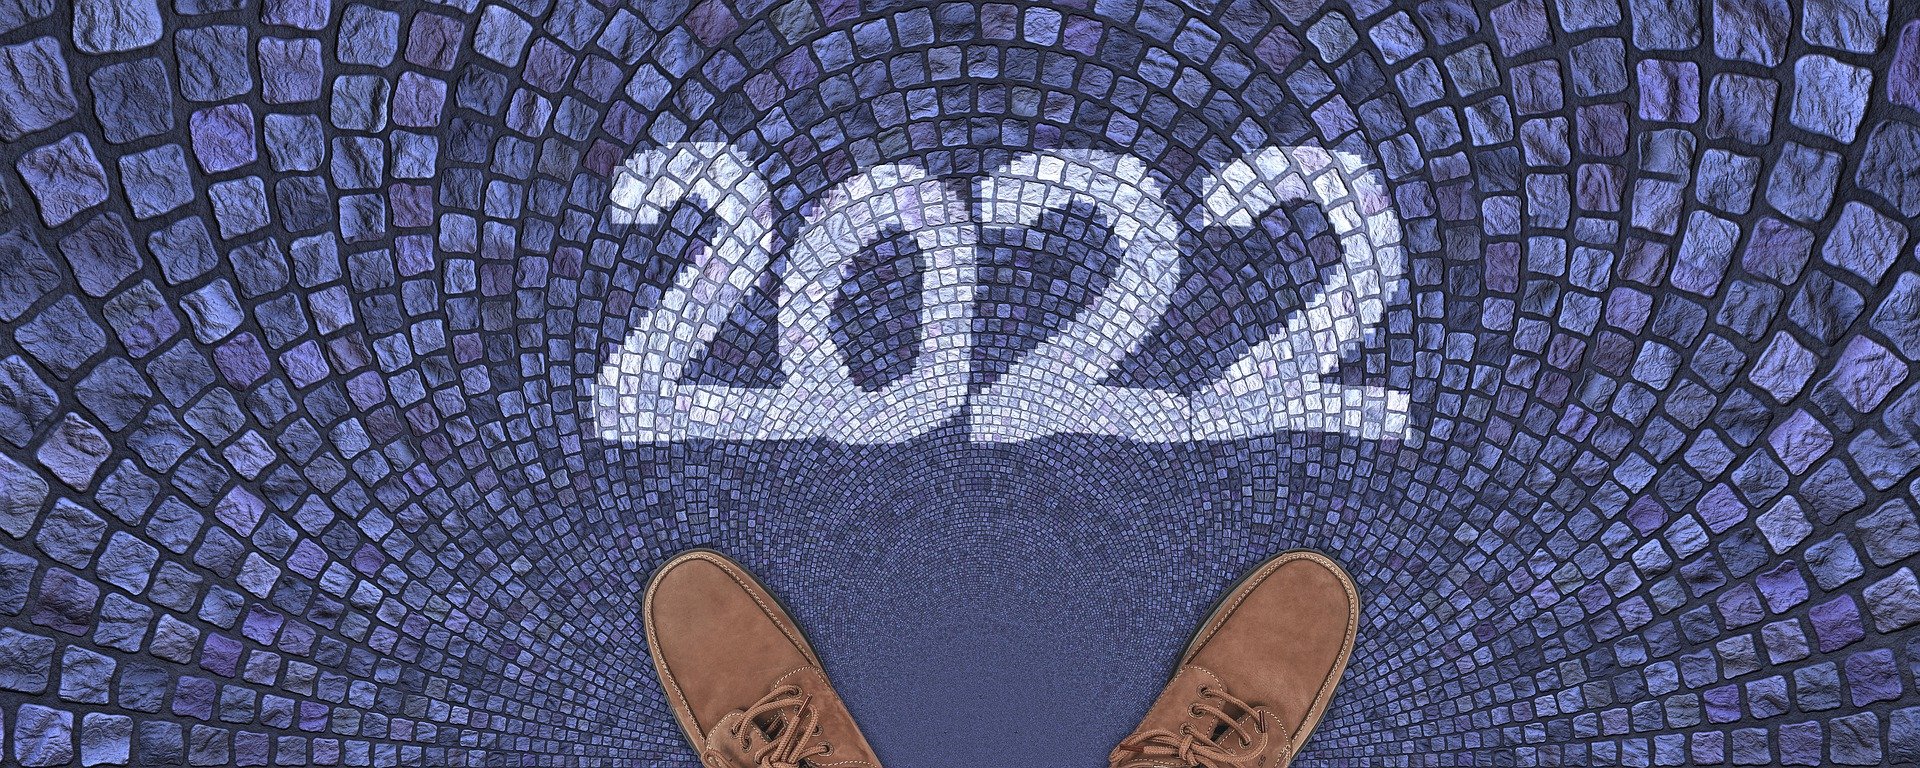 15 Propósitos de marketing jurídico para el 2022